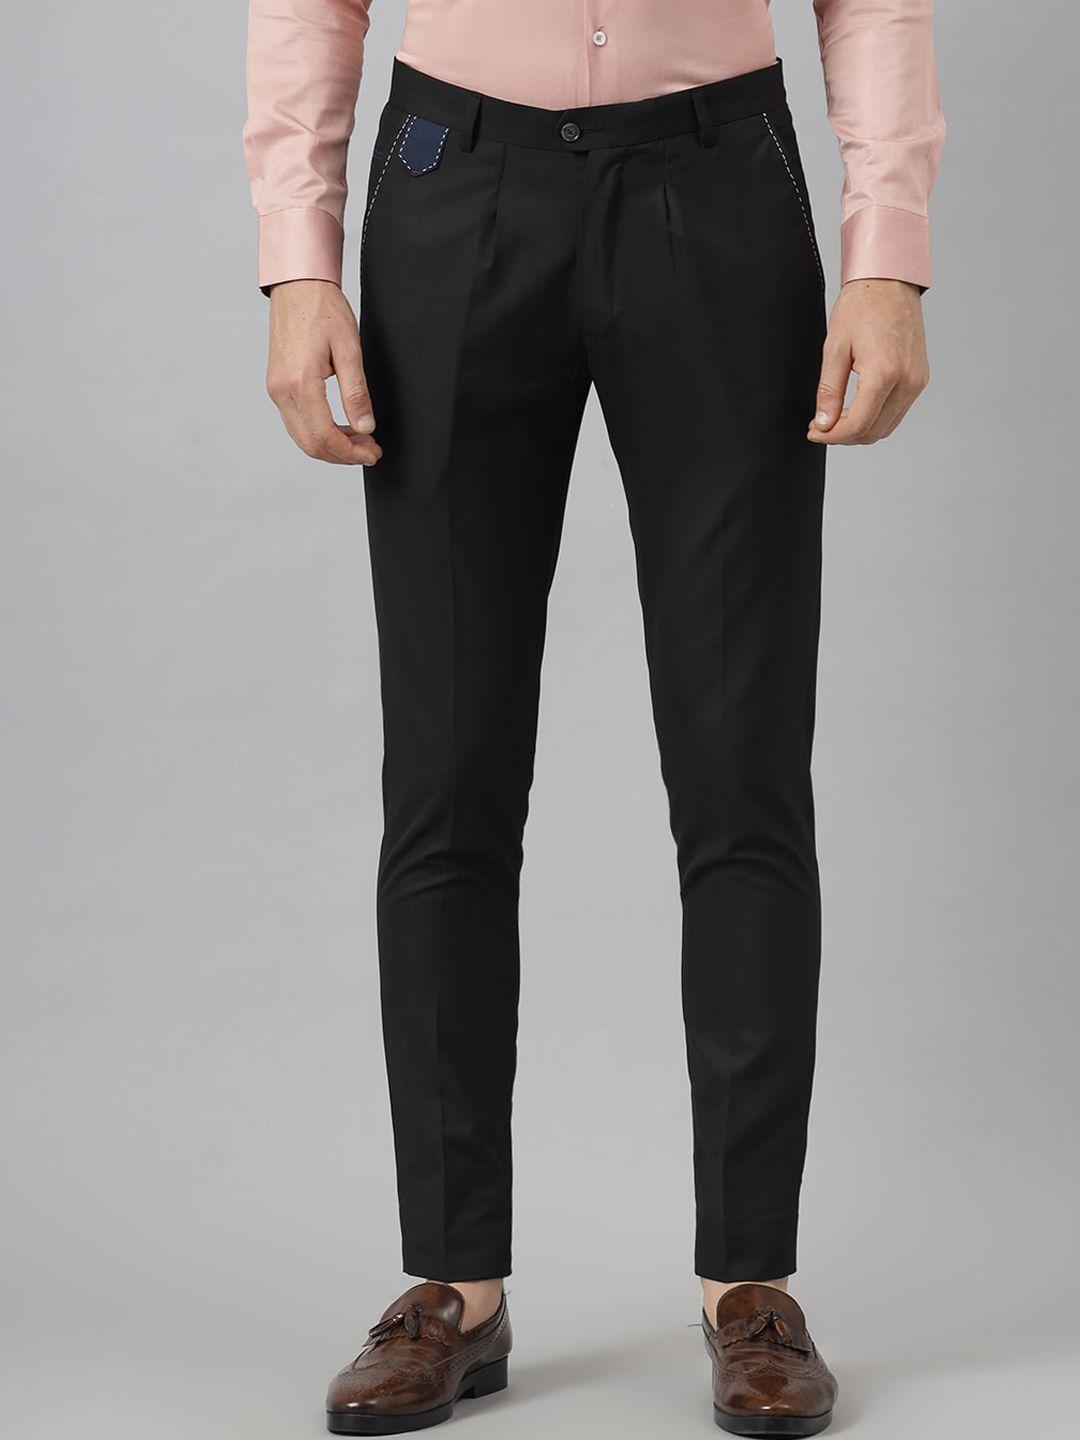 mr button men black textured slim fit trousers